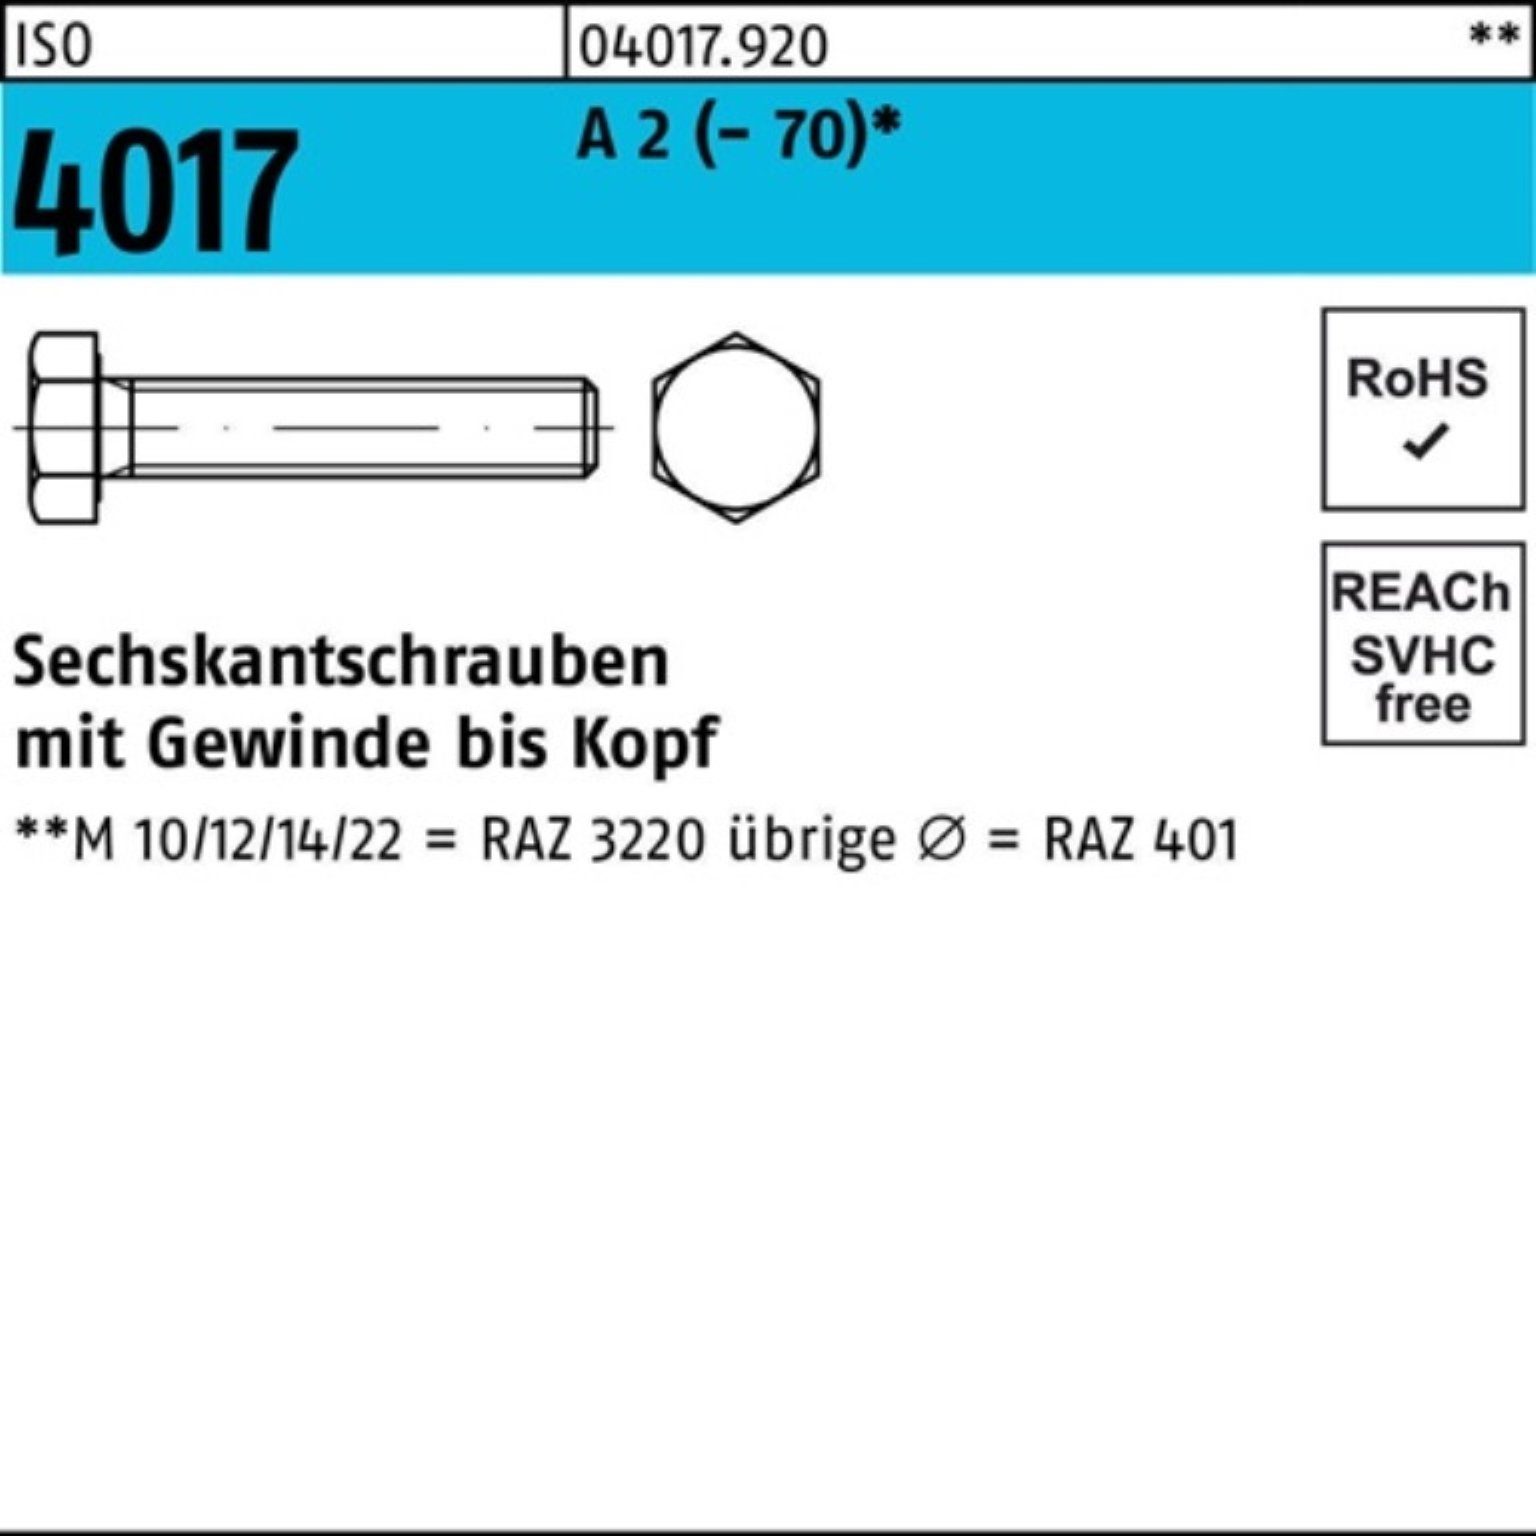 Bufab Sechskantschraube 200er Pack Sechskantschraube ISO 4017 VG M8x 25 A 2 (70) 200 Stück